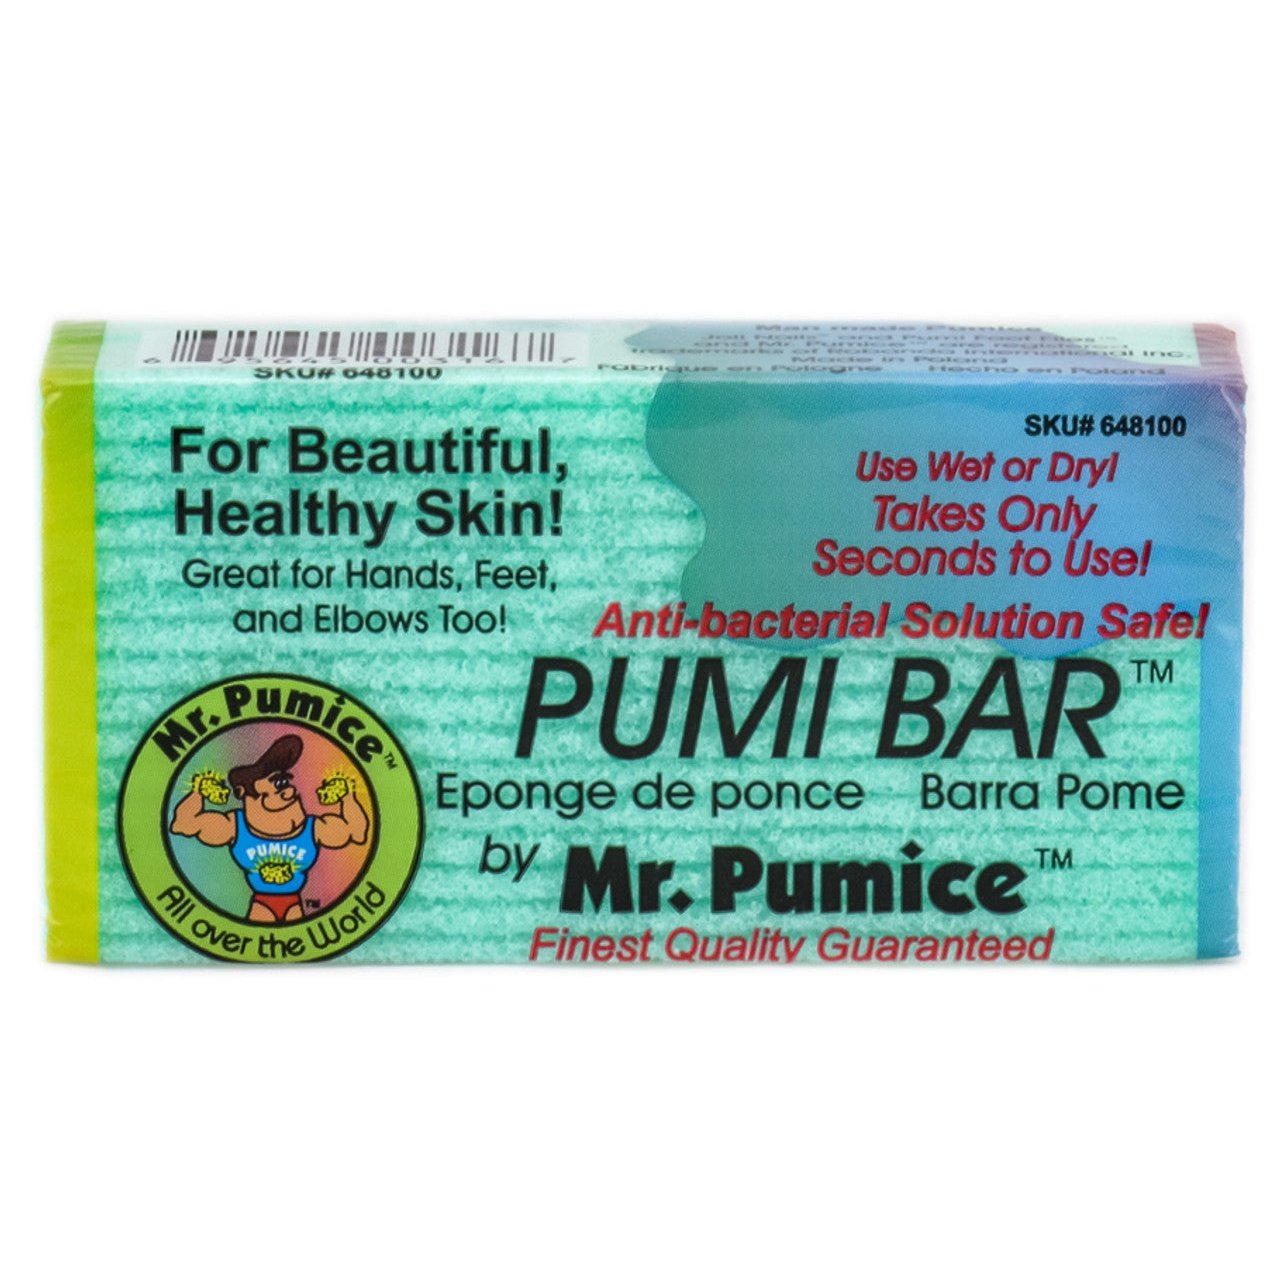 Mr. Pumice Colored Pumi Bar